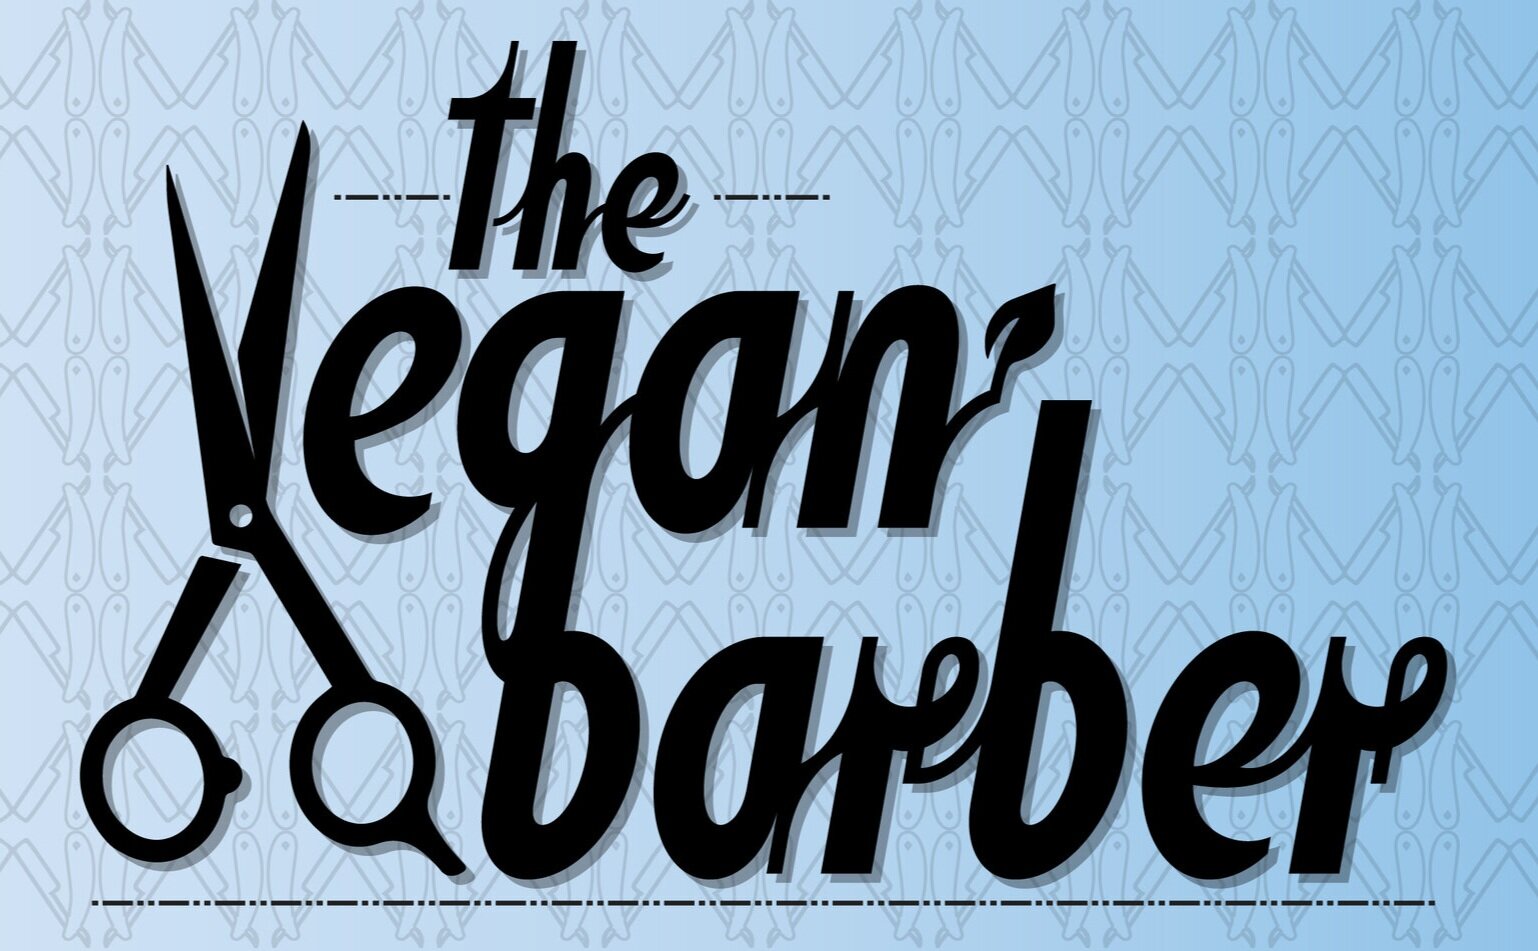 The Vegan Barber